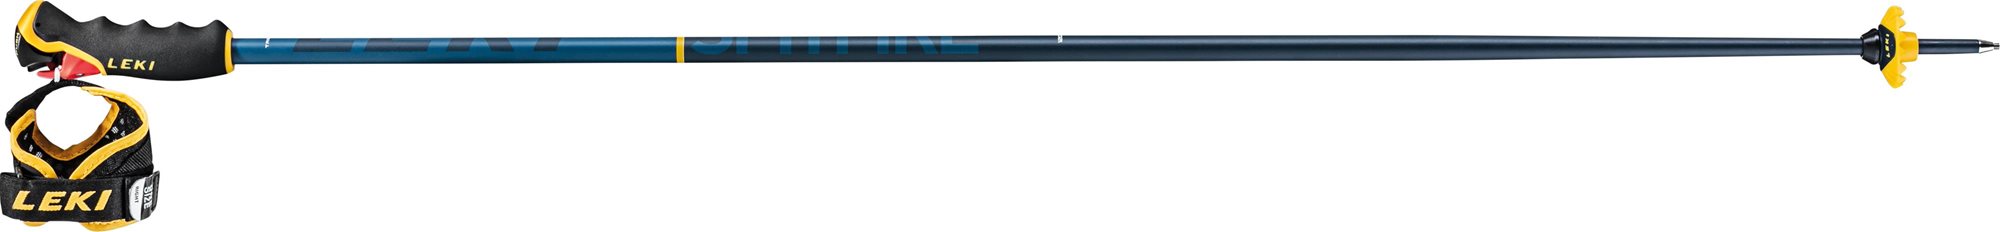 Leki Spitfire 3D, denimblue-aegeanblue-mustardyellow, 120 cm-es méret